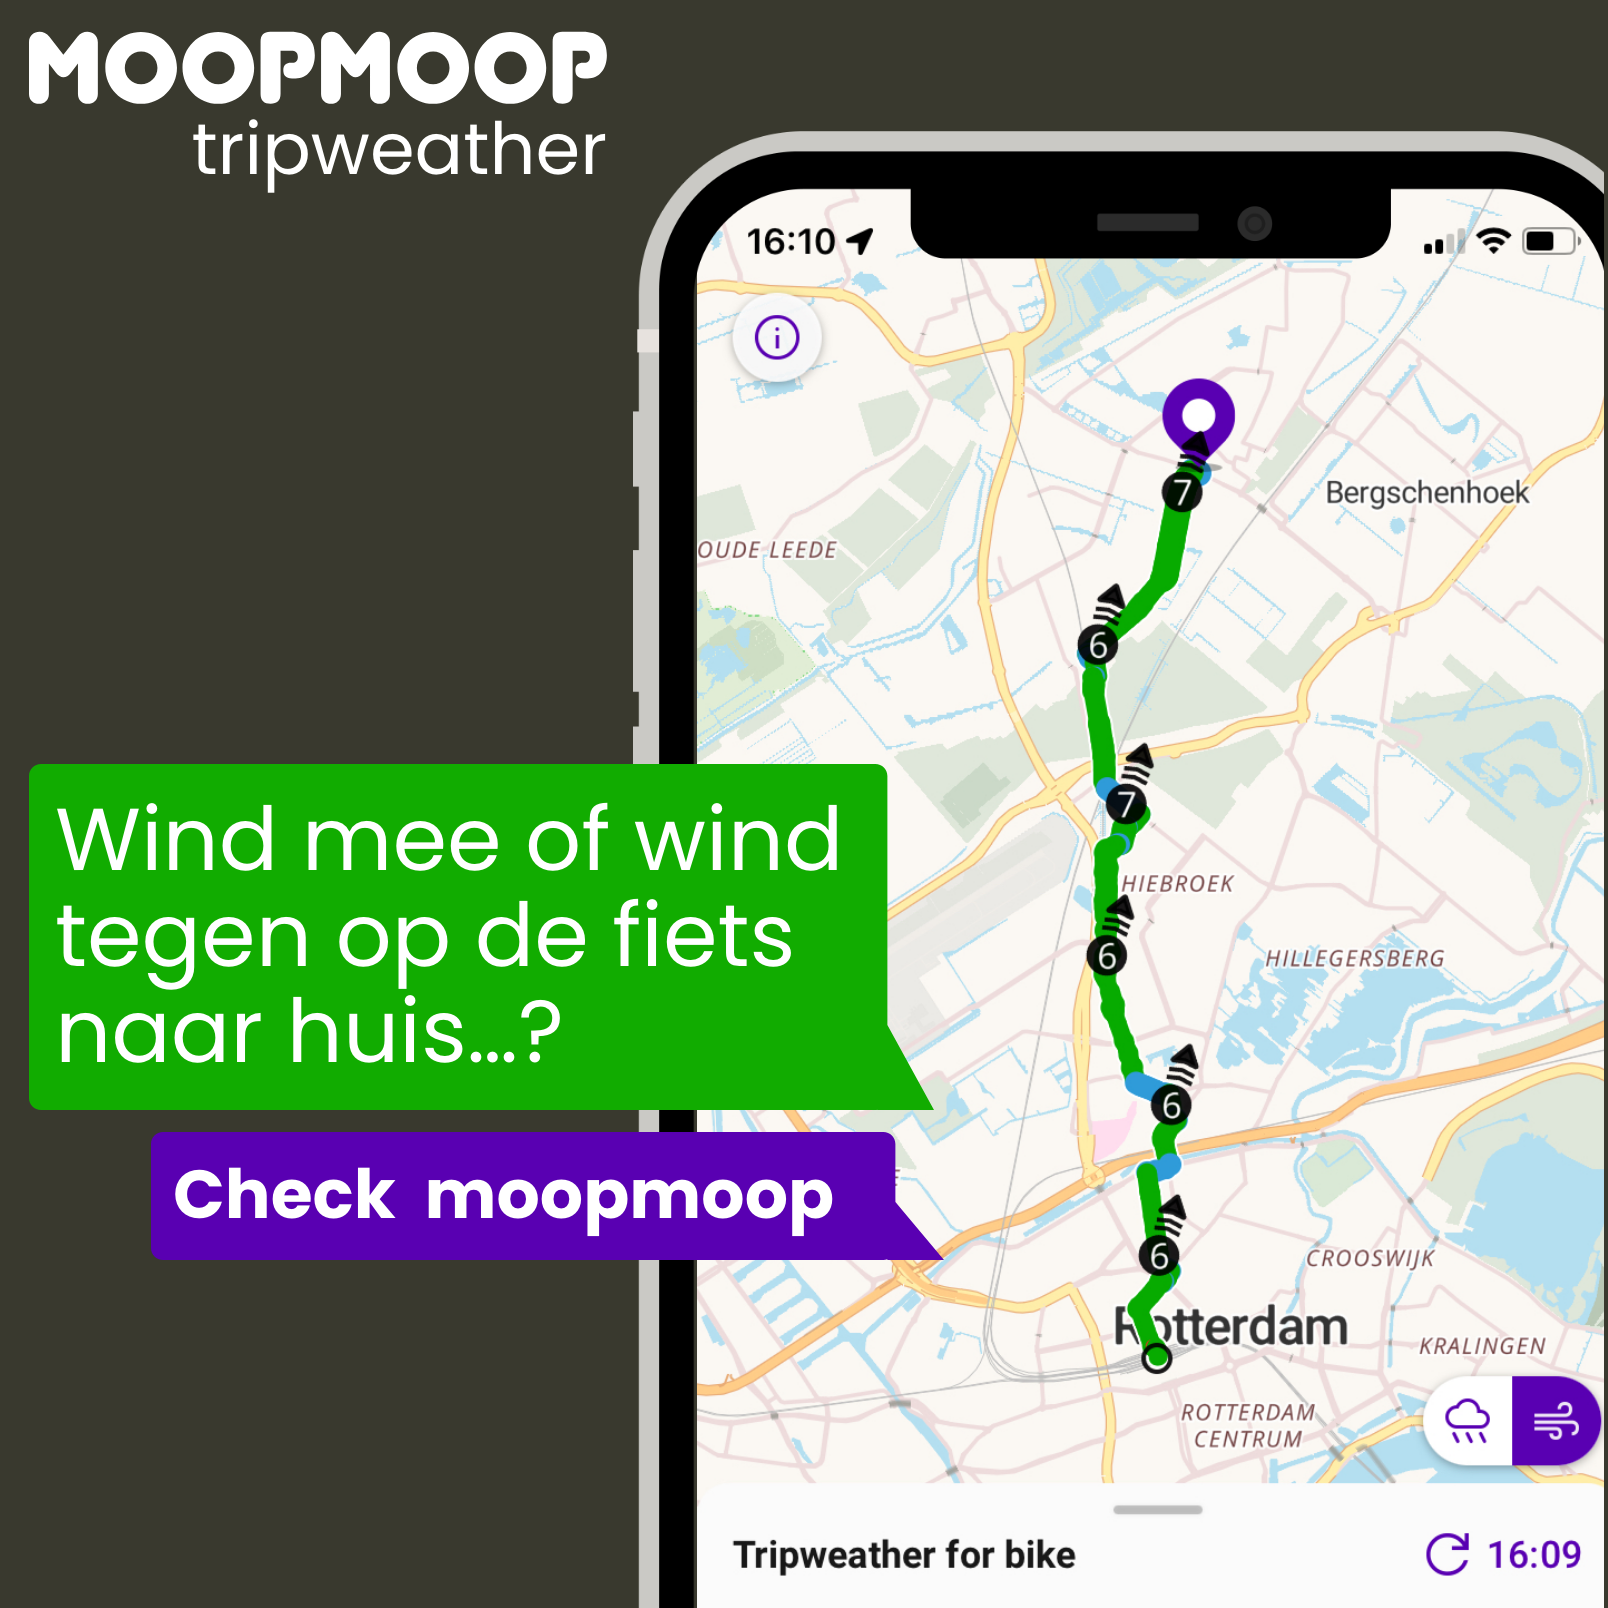 MoopMoop windmee of wind tegen naar huis